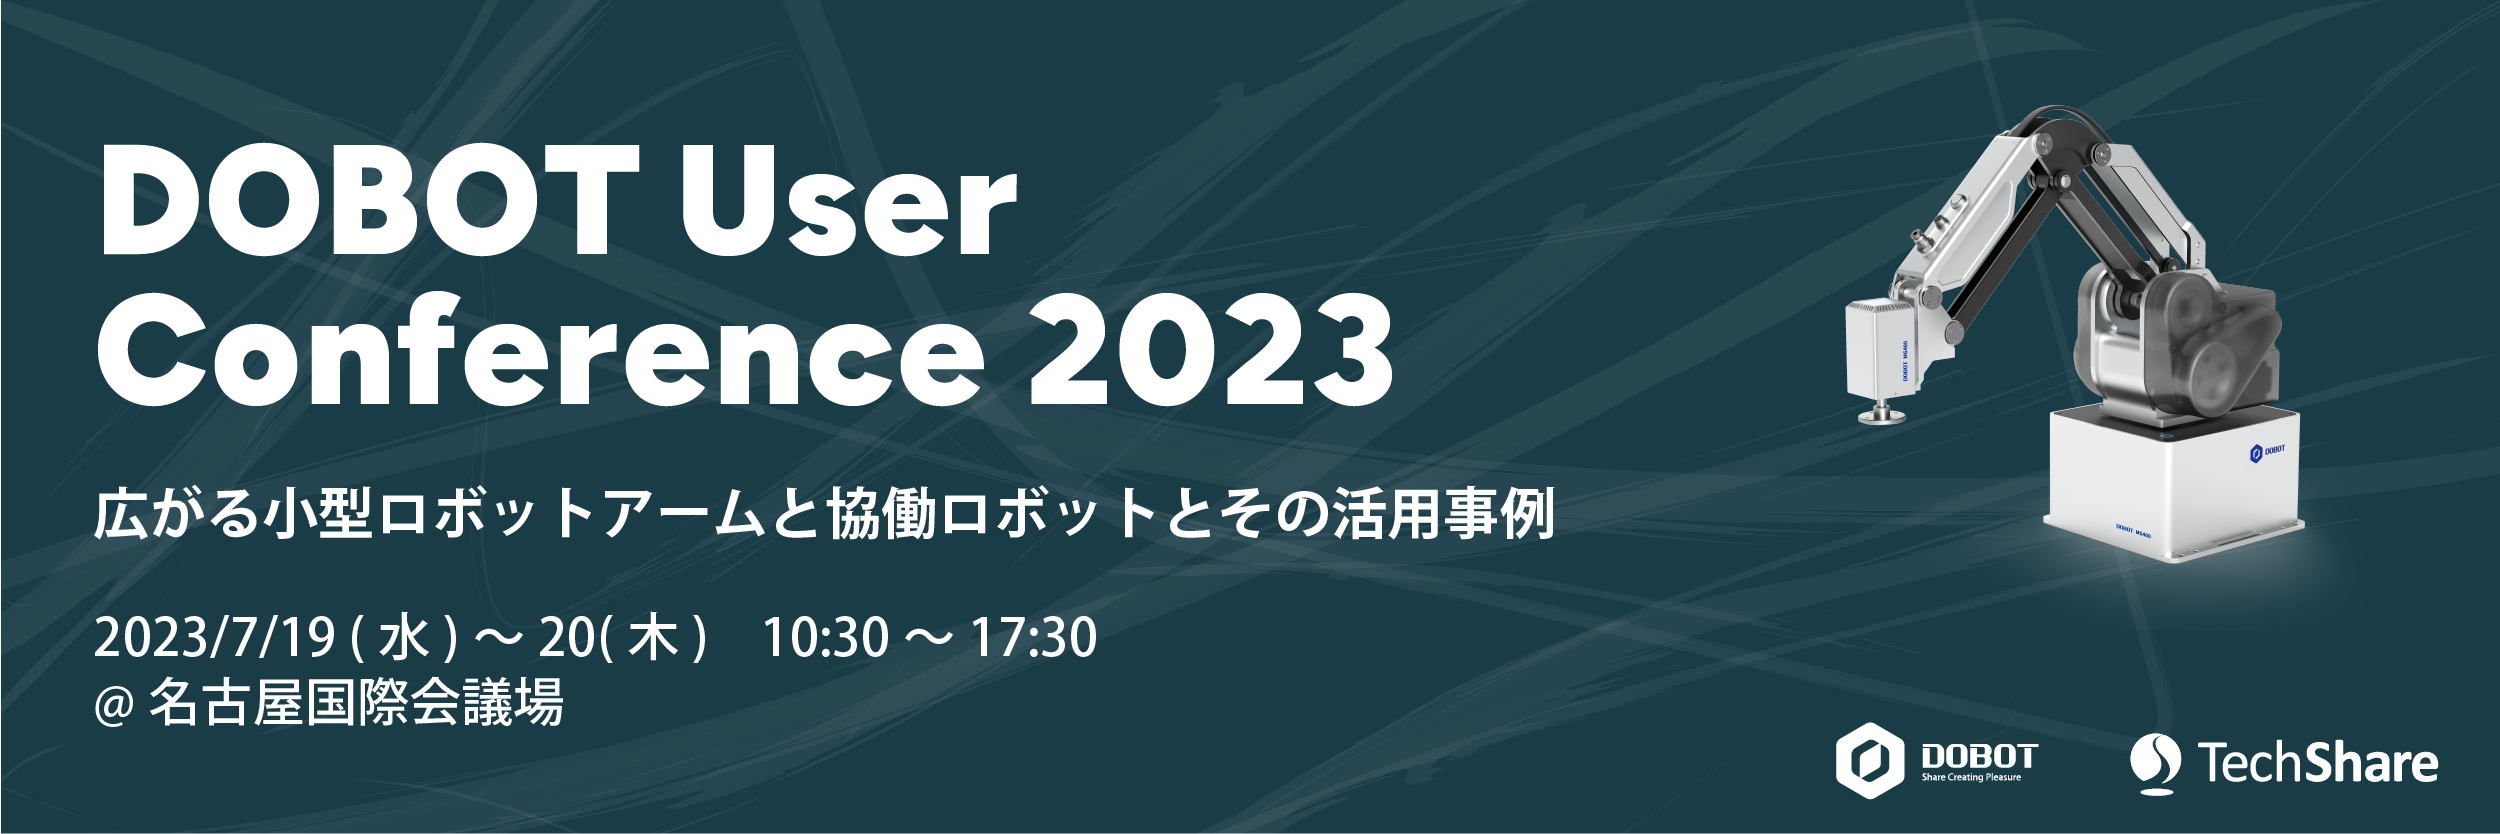 DOBOT User Conference 2023のバナー画像